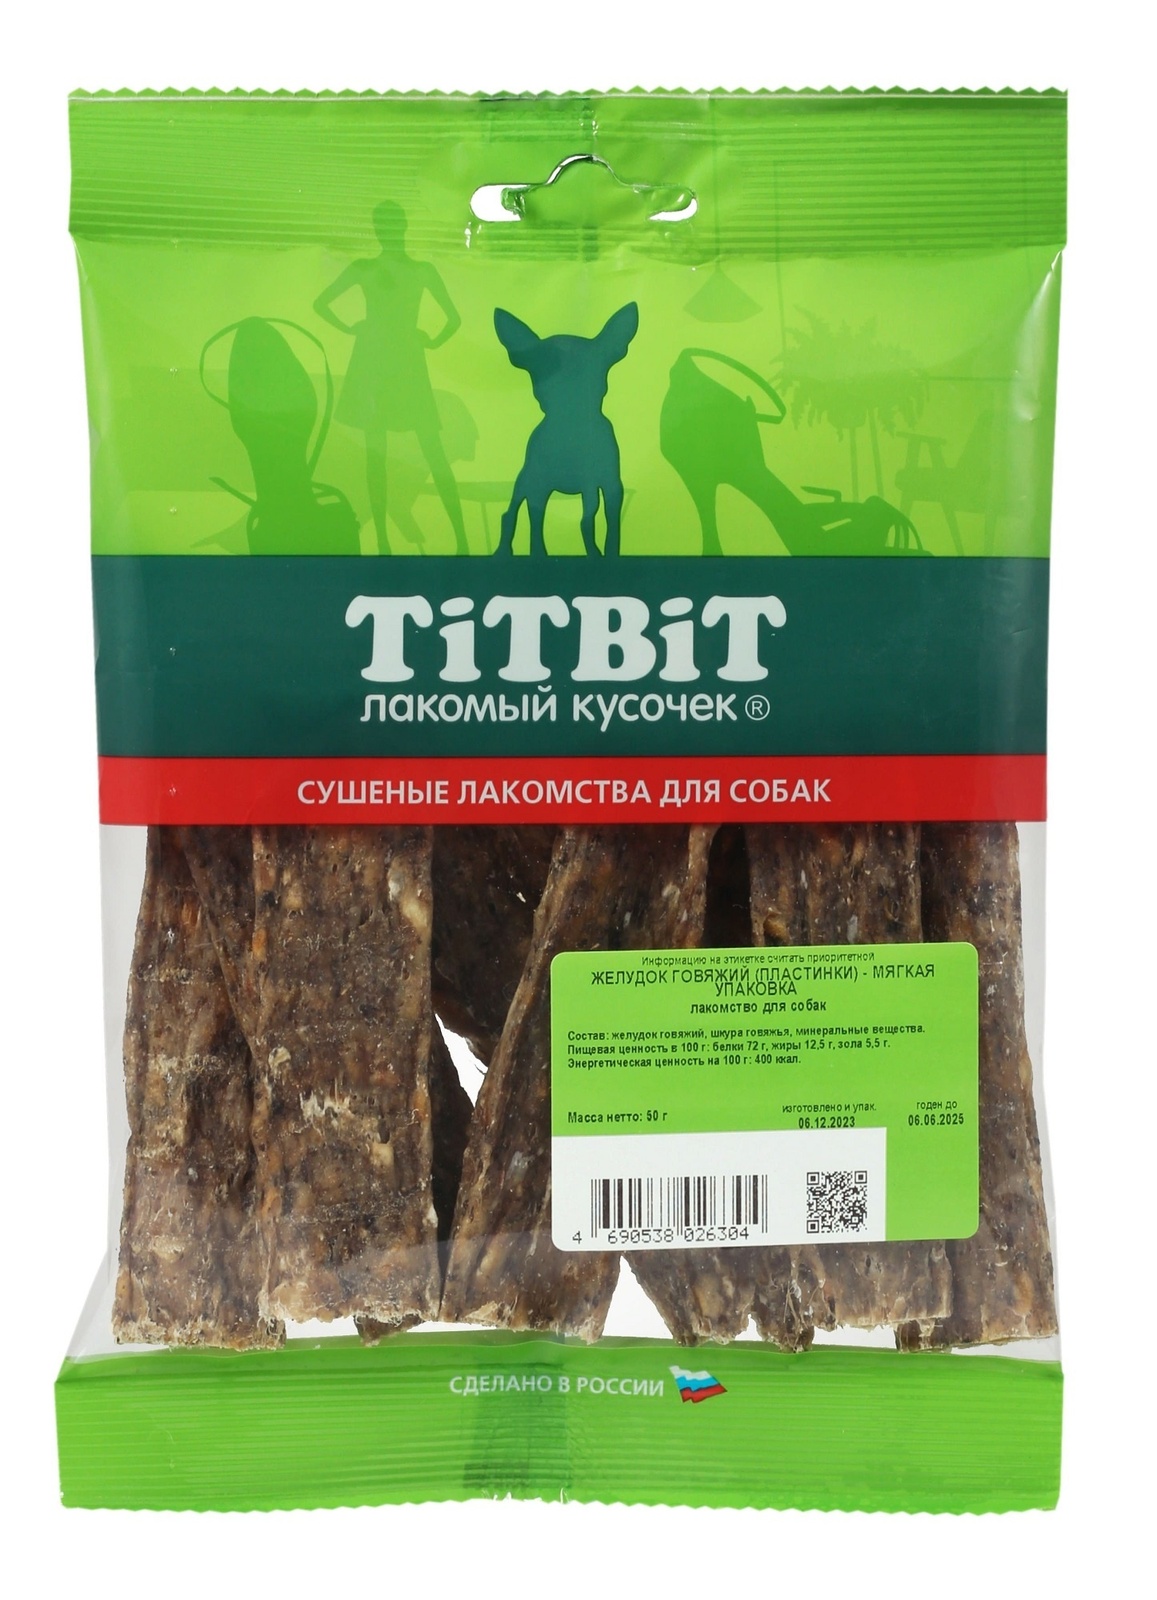 TiTBiT TiTBiT желудок говяжий (пластинки) - мягкая упаковка (50 г) titbit titbit хвост говяжий большой мягкая упаковка 70 г